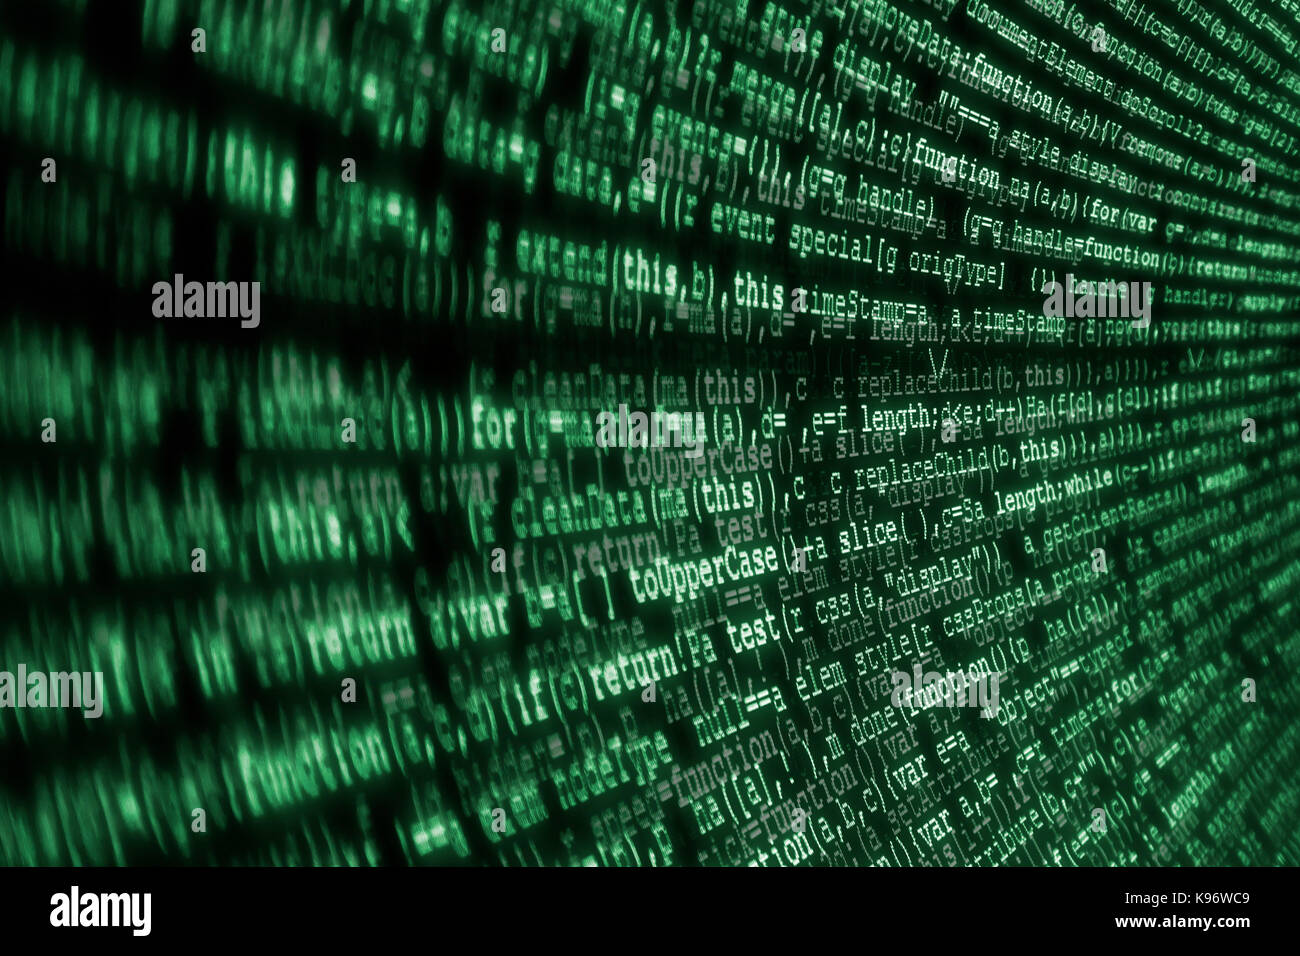 Internet Concept, codice JavaScript. Pagine Web linguistiche, computer, rete, Web. Sfondo nero con testo verde come vecchi monitor CRT, stile matrice. Foto Stock